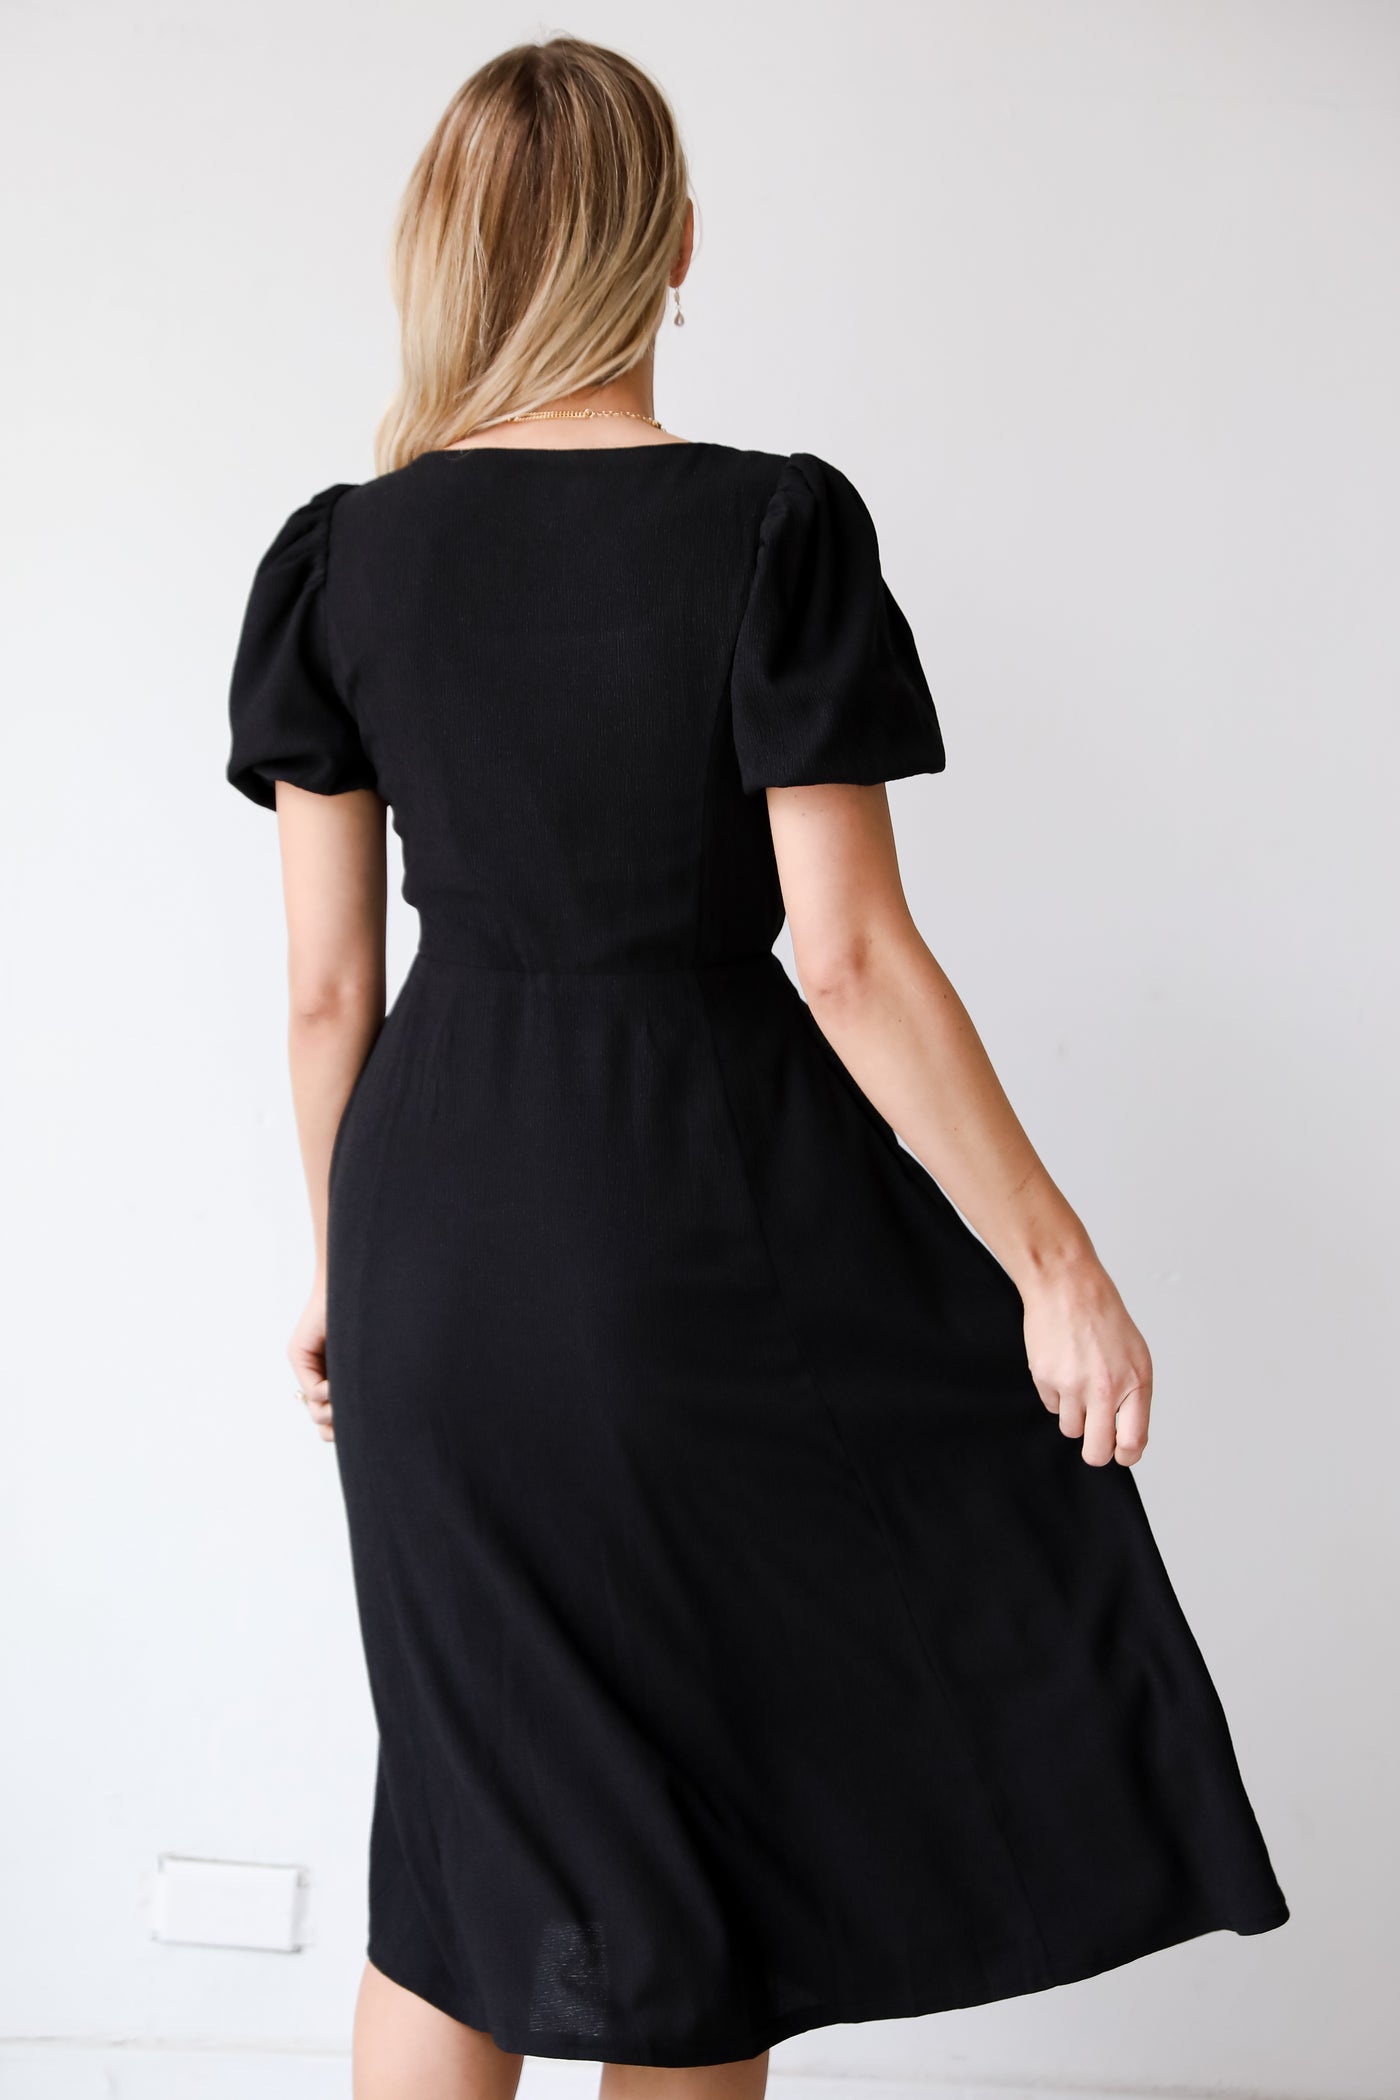 flowy black midi dress, Black Midi Dress, You're The One Black Midi Dress, Black Mini Dress, Black Dress, Dress Boutique, Women's Black Dress